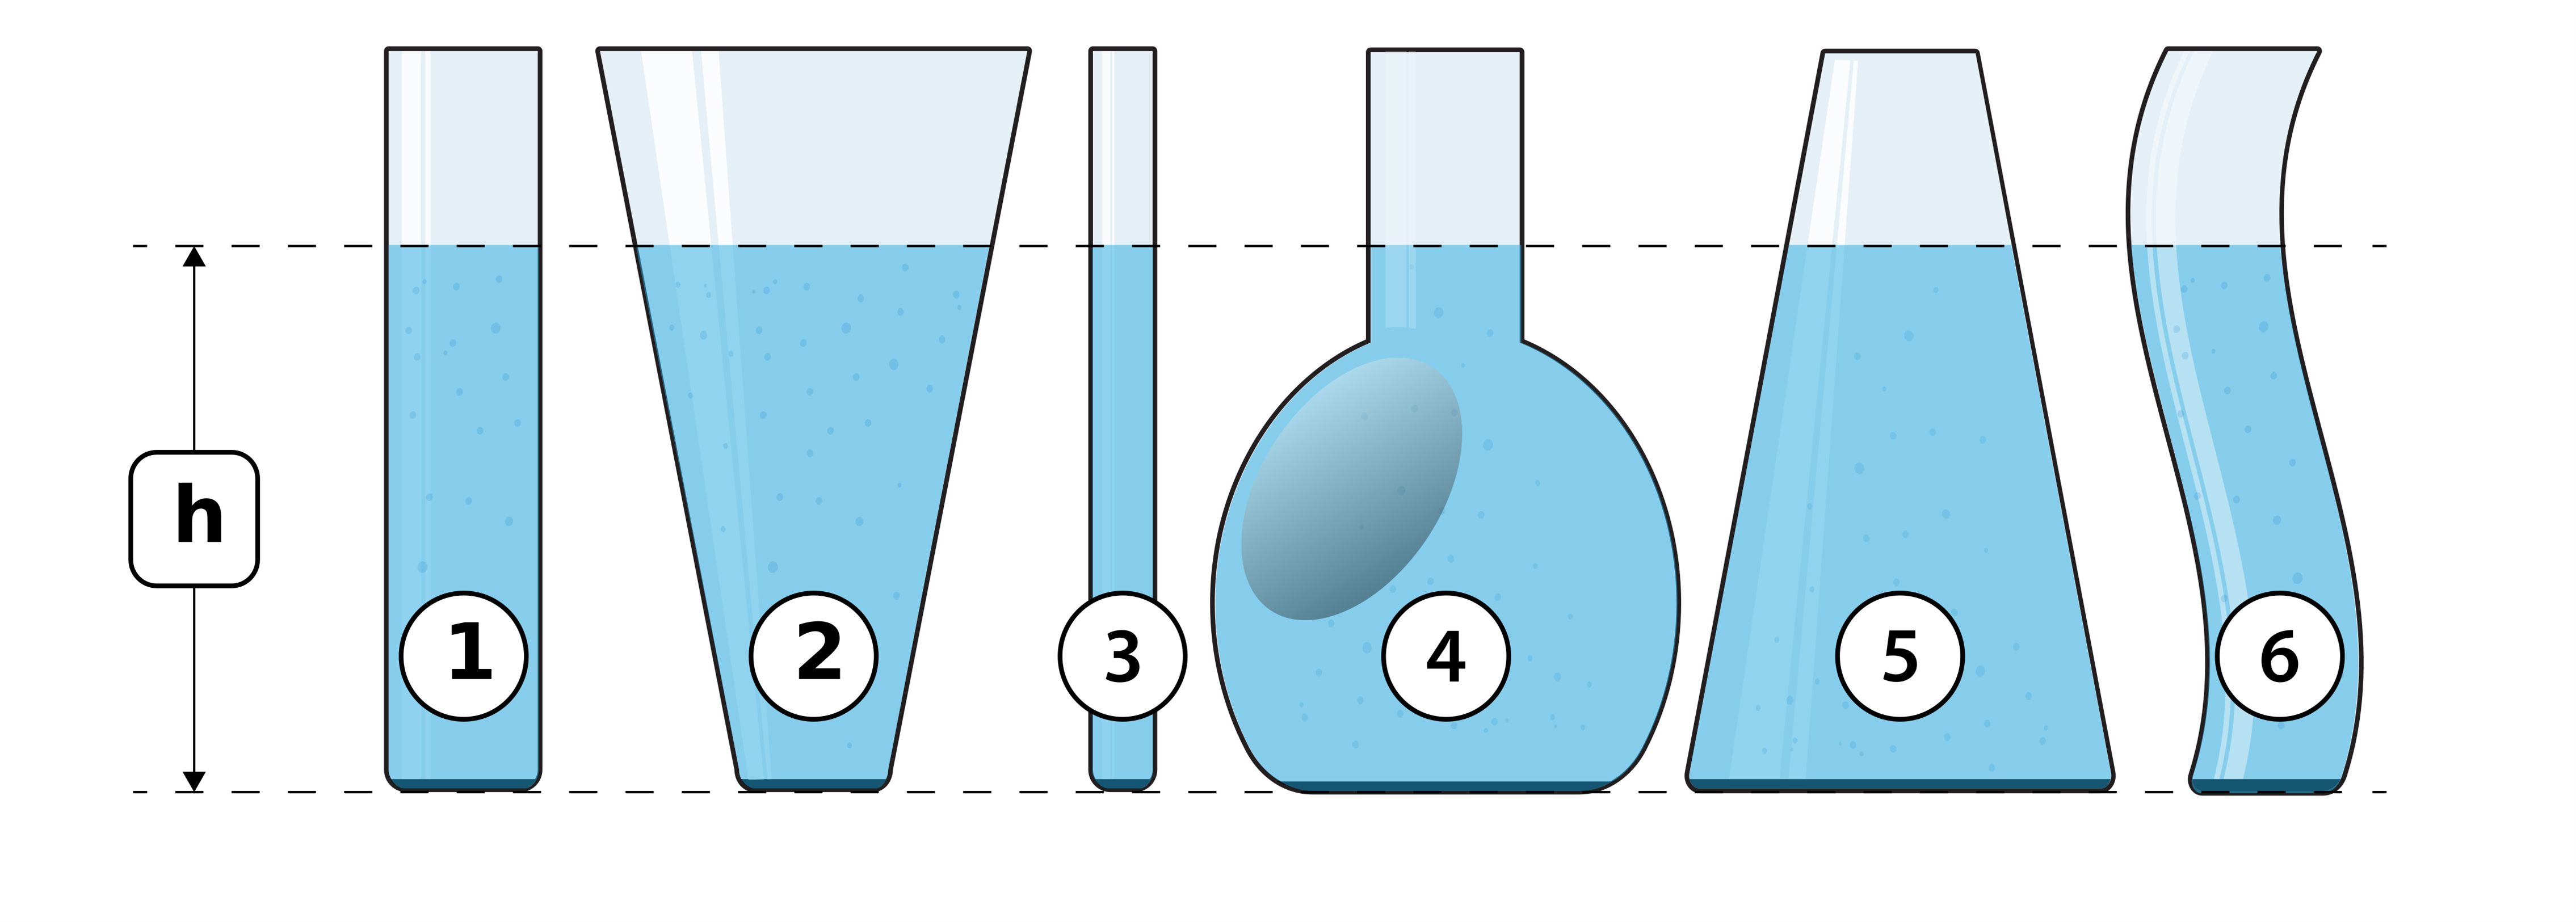 В четырех сосудах различной формы налита вода